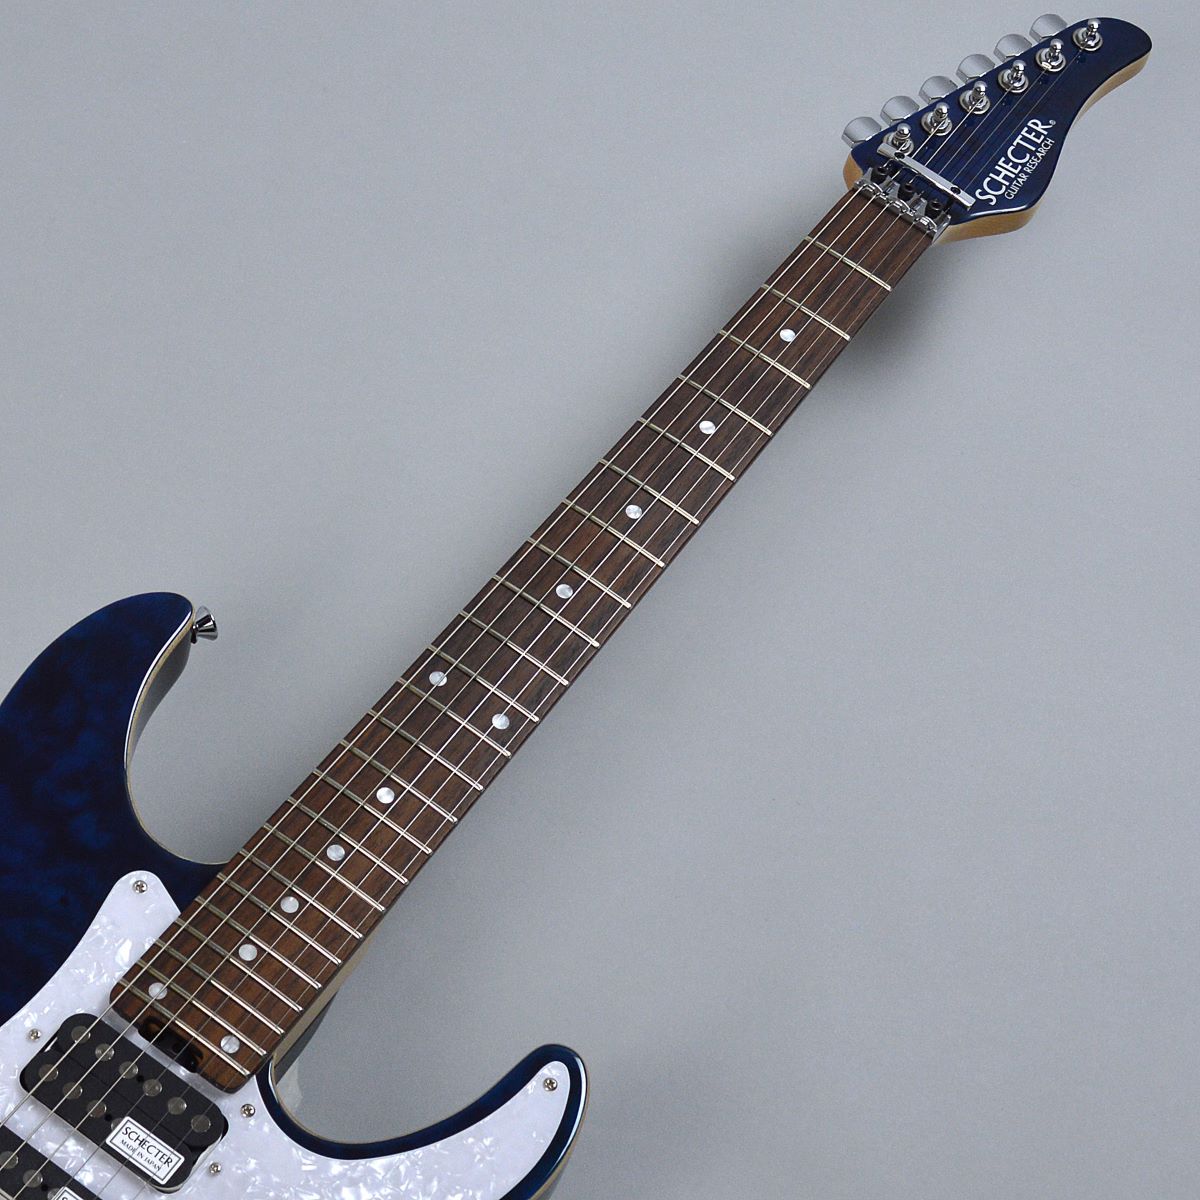 【メリット】Schecter SD-2 初期日本製です。 ギター